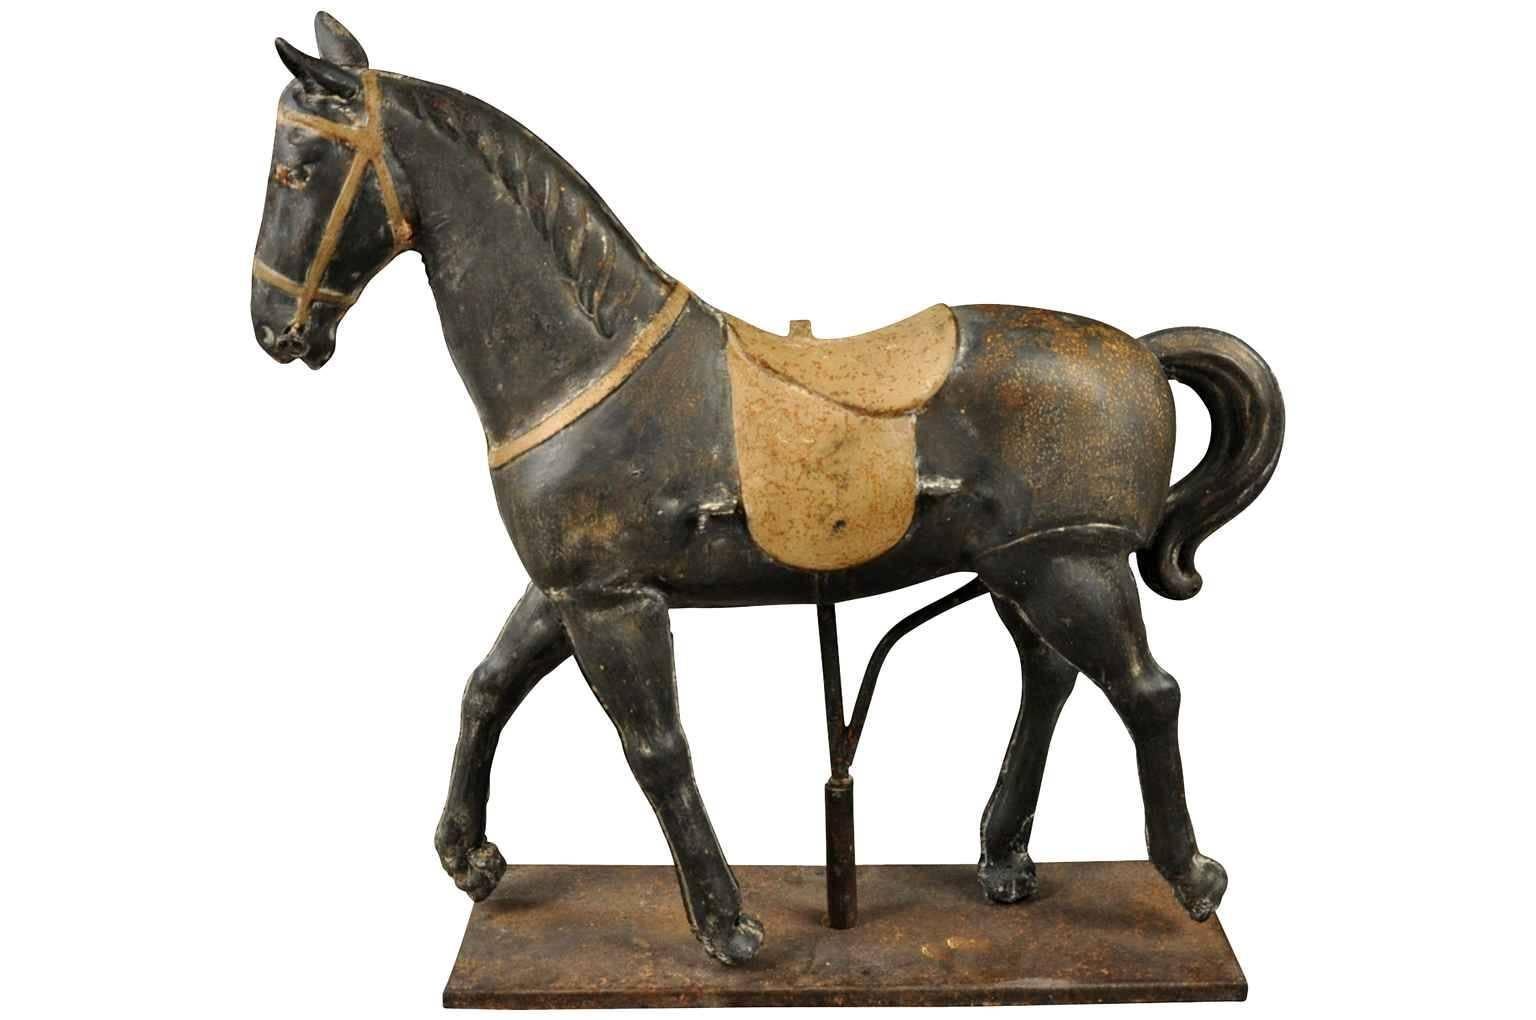 Un charmant cheval jouet de la fin du 19e siècle construit en métal peint. Une pièce d'accent charmante pour n'importe quel espace de vie.